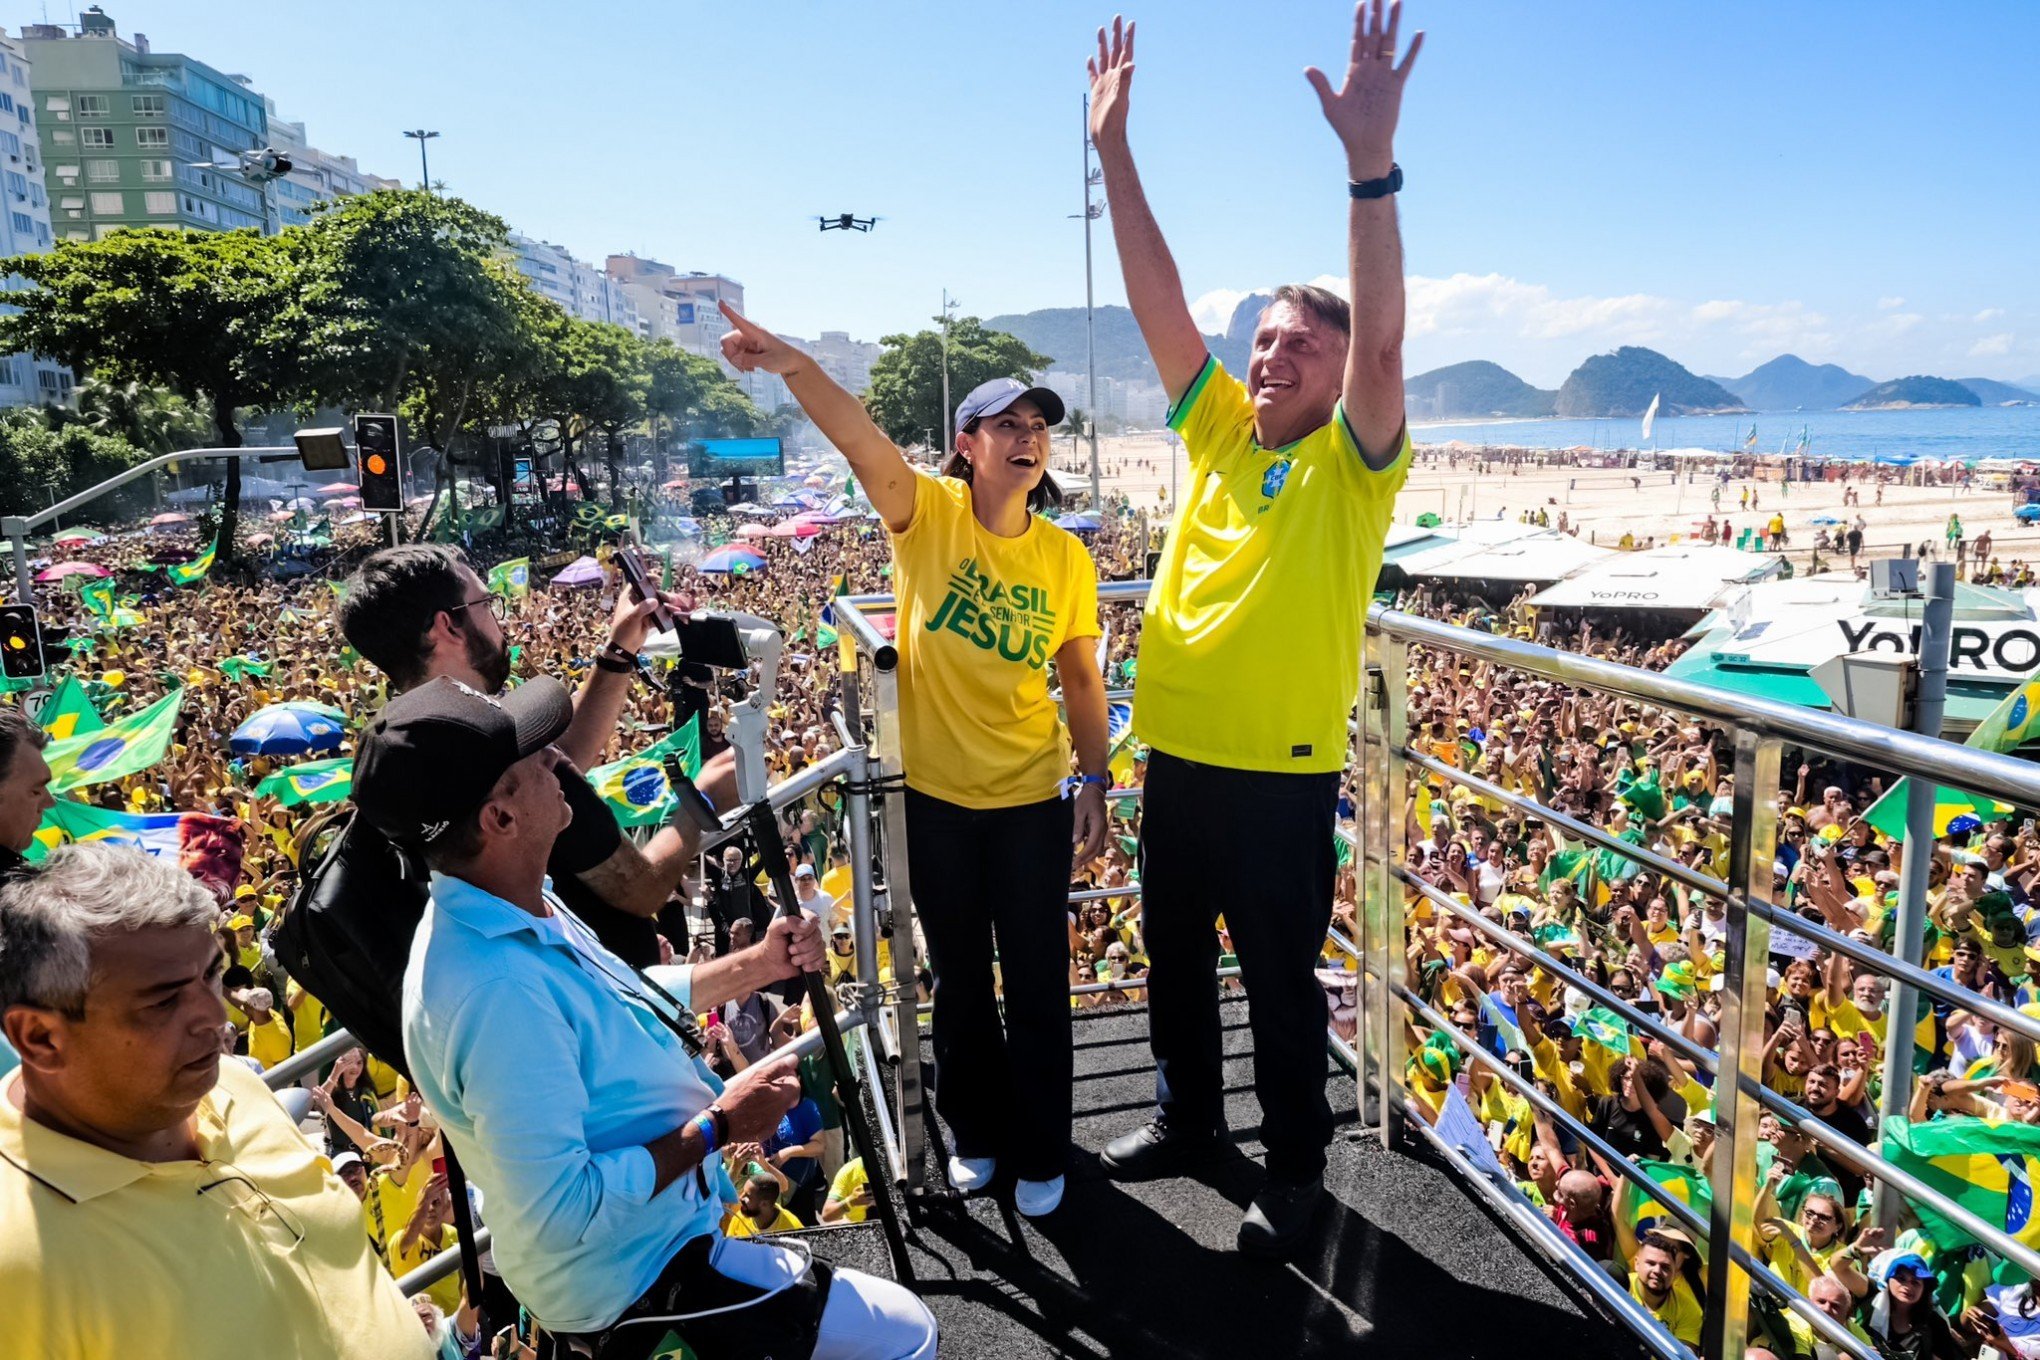 Minuta do golpe, exaltação a Elon Musk e mais: Confira discurso de Bolsonaro em ato no Rio